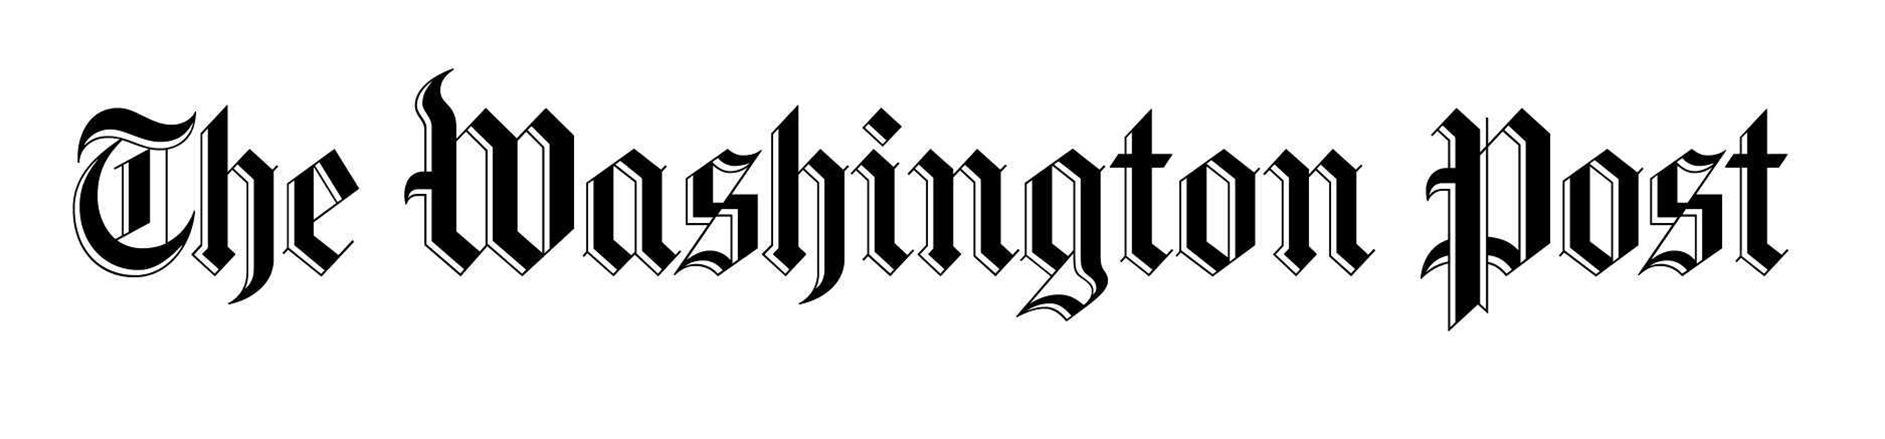 The Washington Post Logo - Washington Post logo » FirstBuild